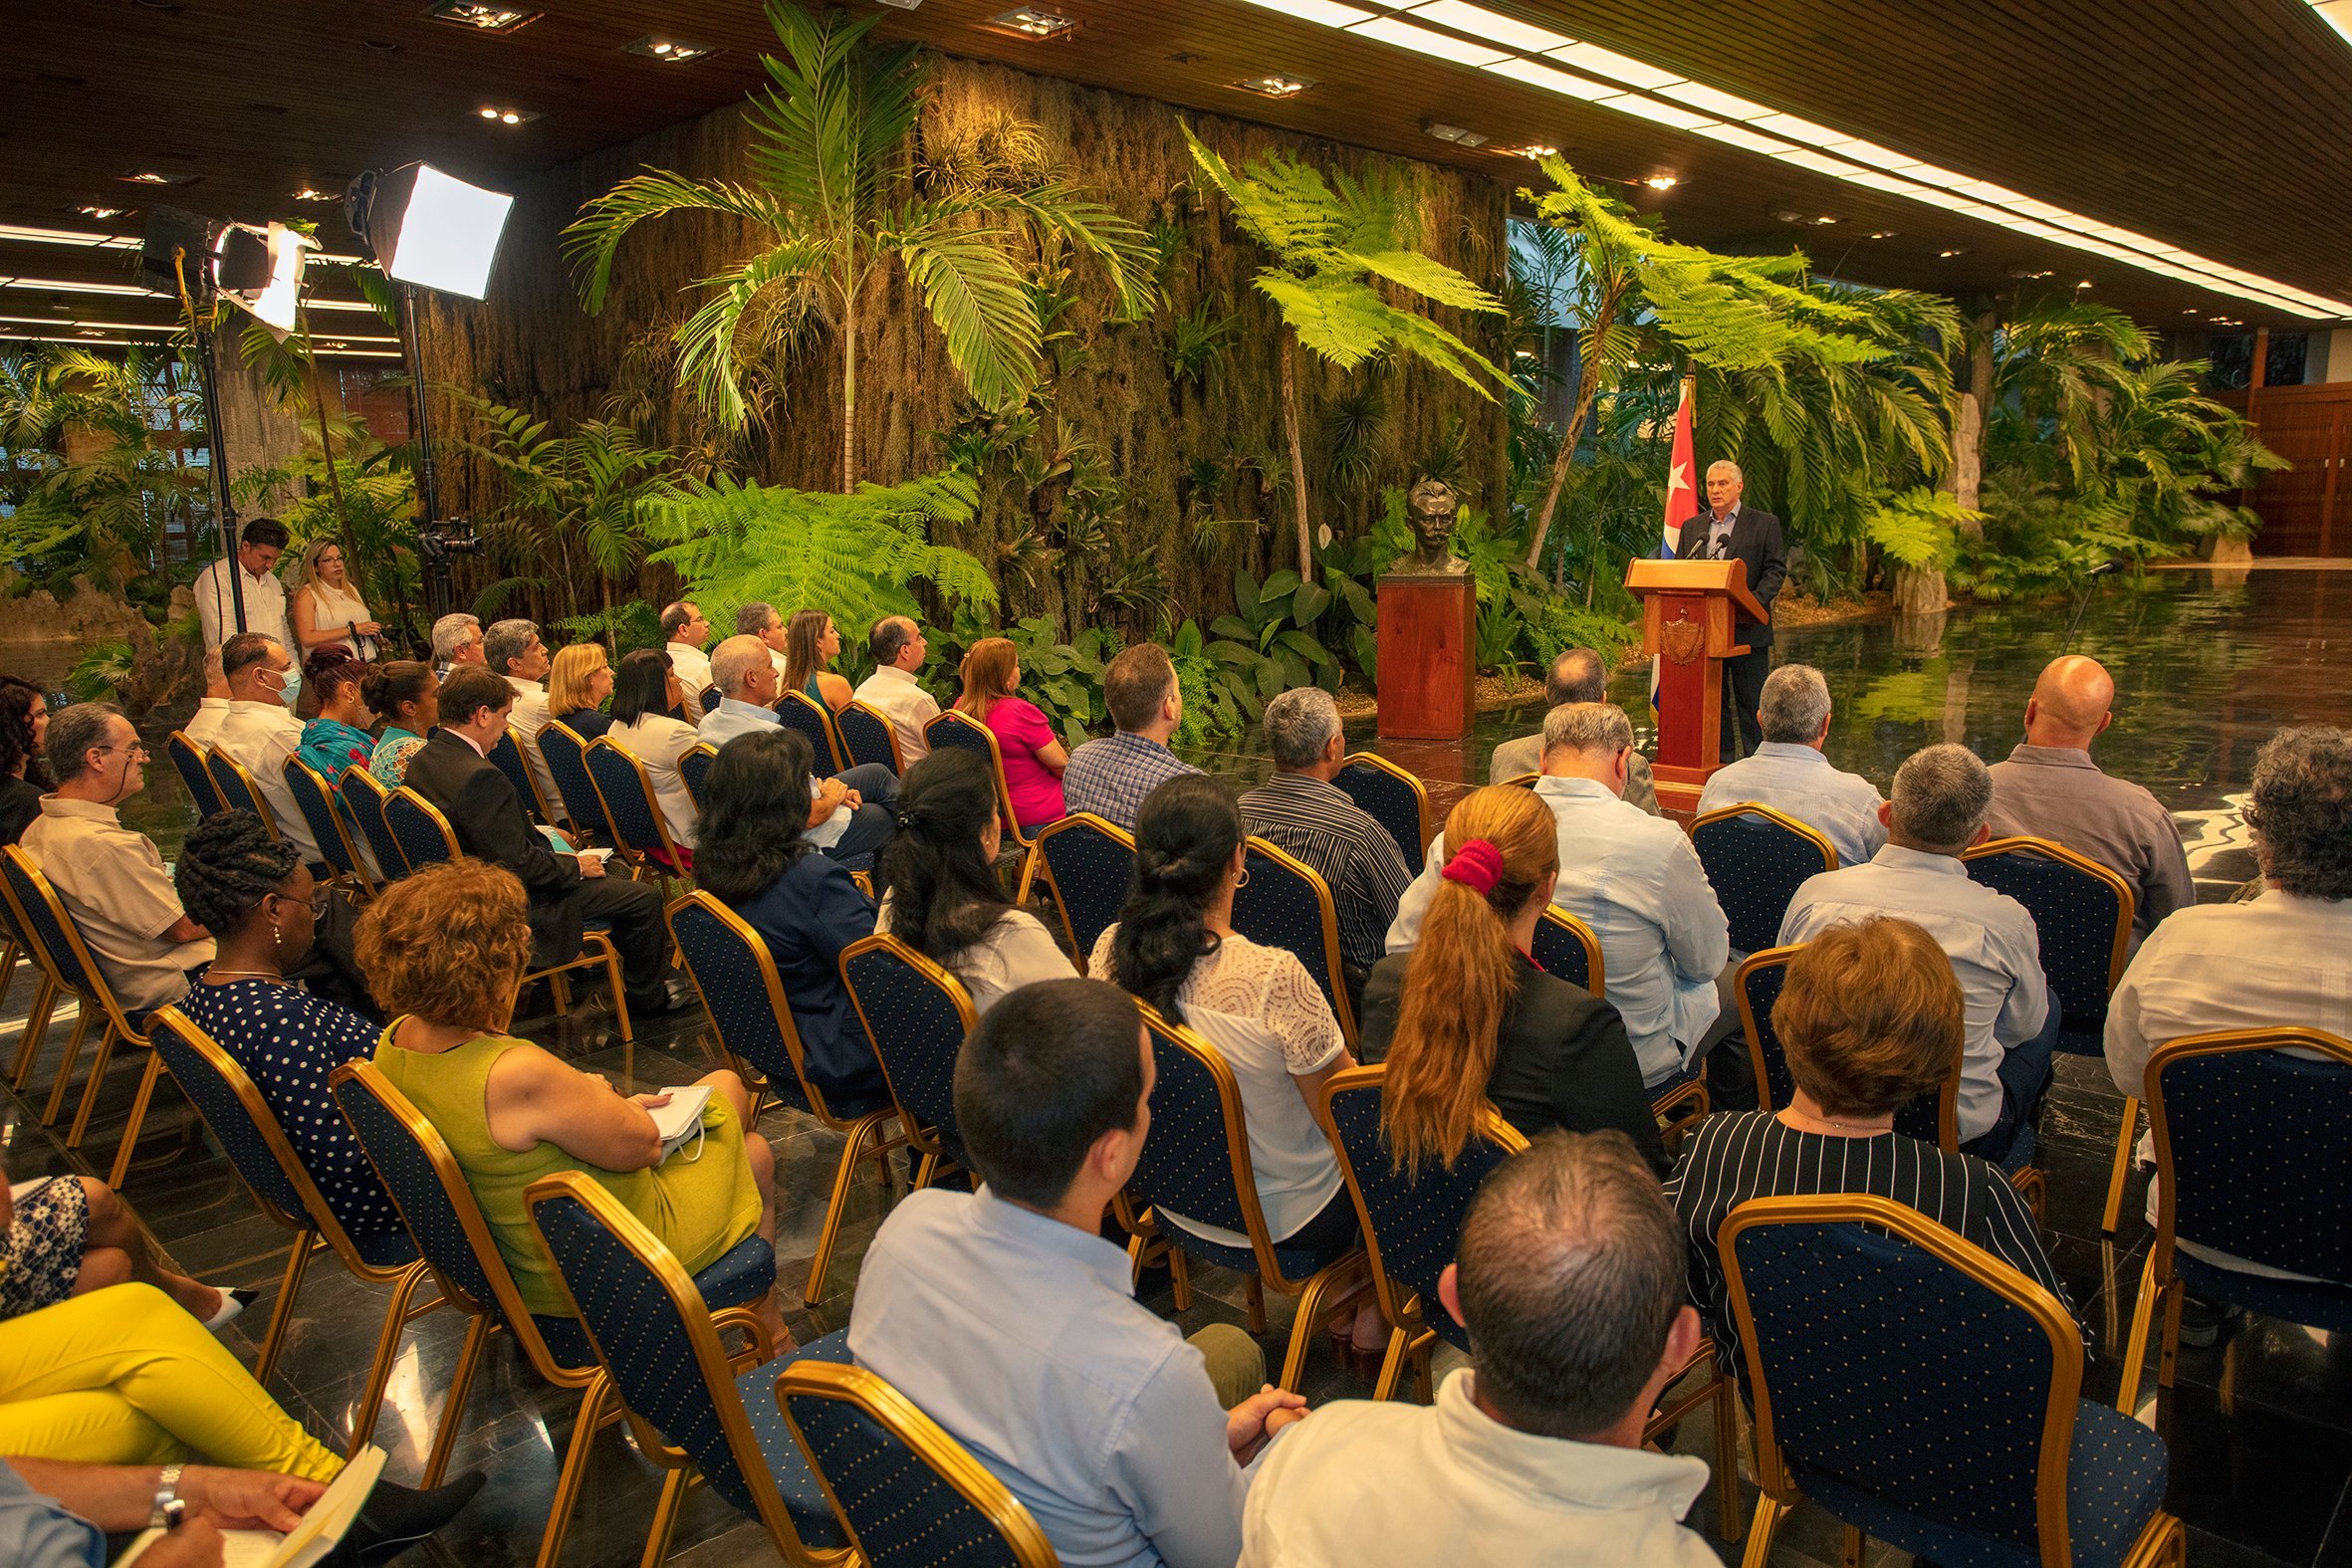 La intervención de Díaz-Canel sucedió durante un encuentro con representantes de la sociedad civil impedidos de viajar para participar en los eventos paralelos de la Cumbre. Foto: twitter.com/PresidenciaCuba.